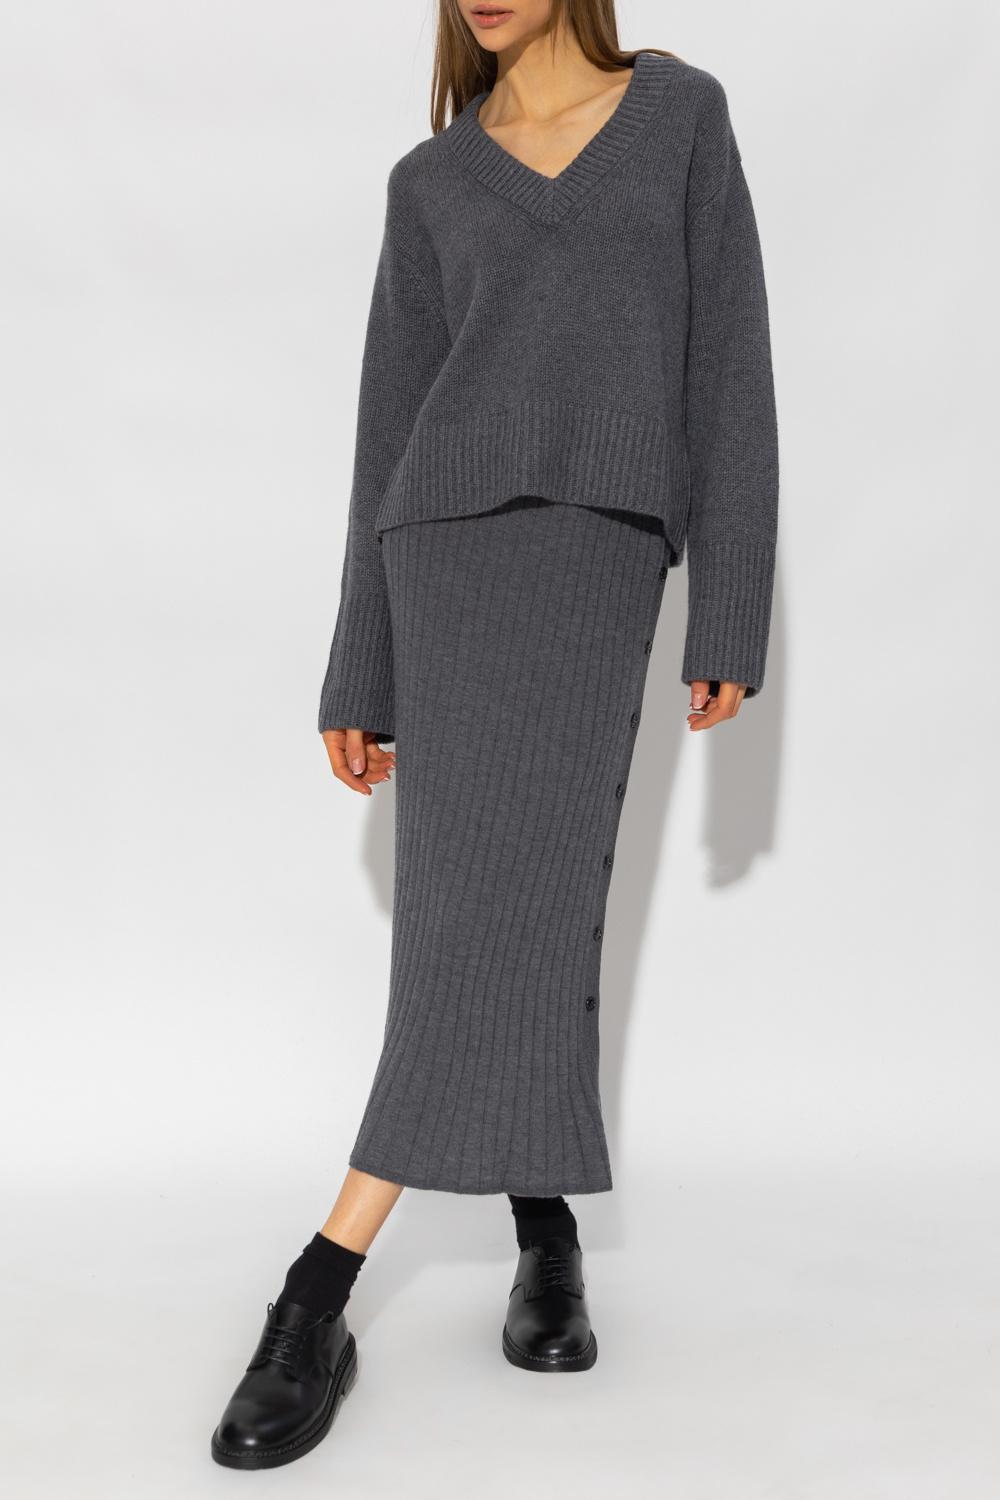 Lisa Yang 'aletta' Sweater in Gray | Lyst